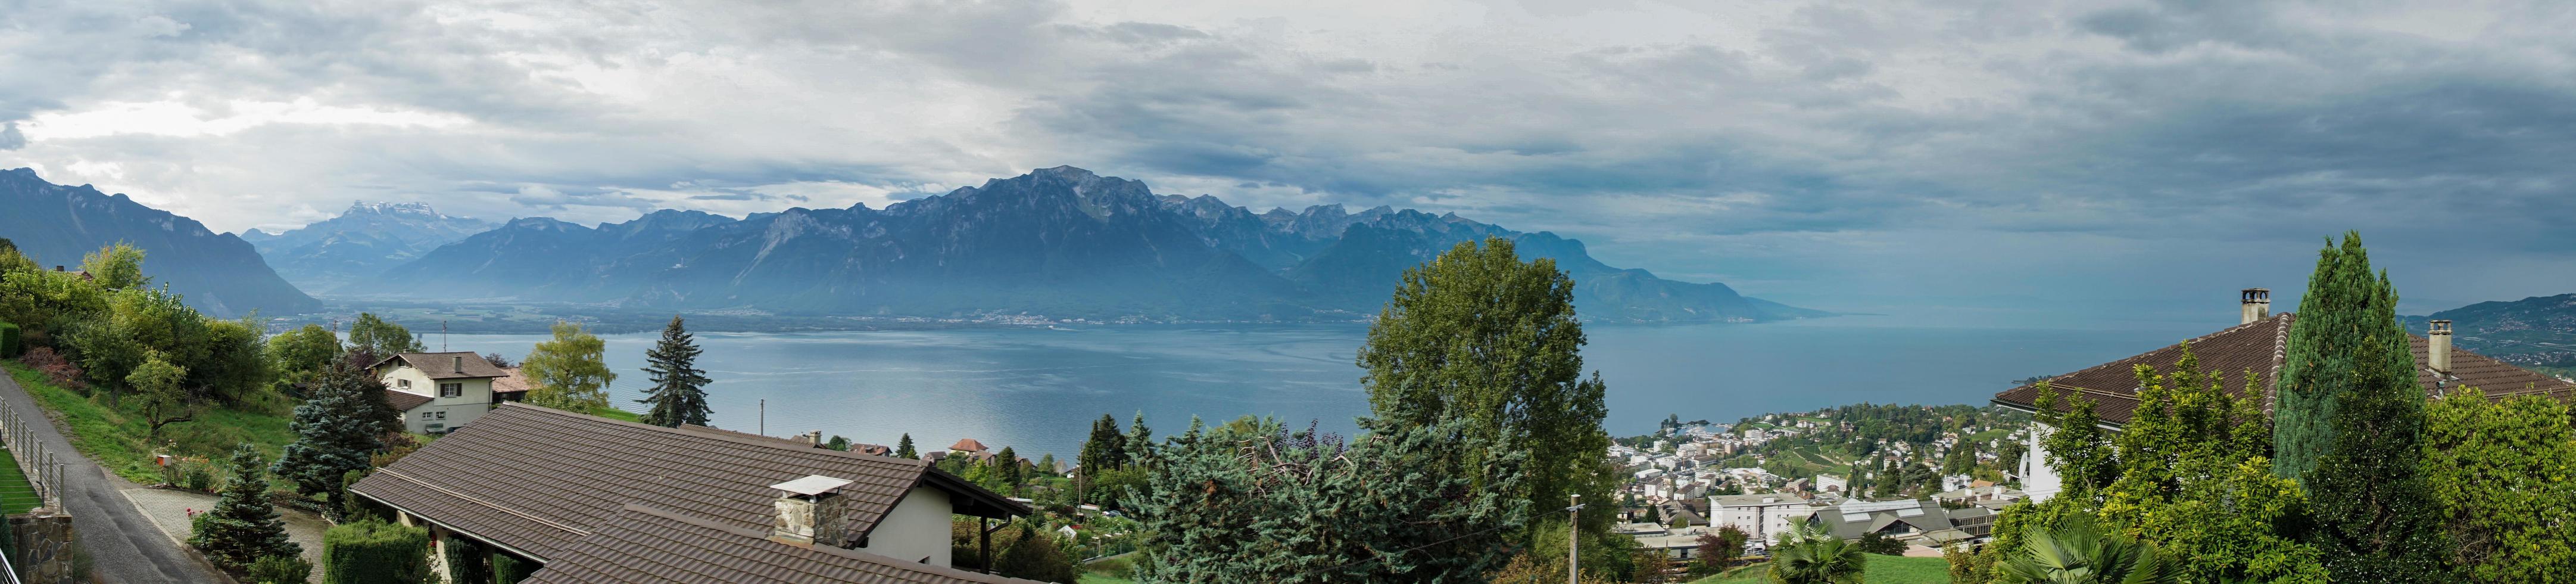 panoramisch uitzicht op het meer van Genève bij montreux foto